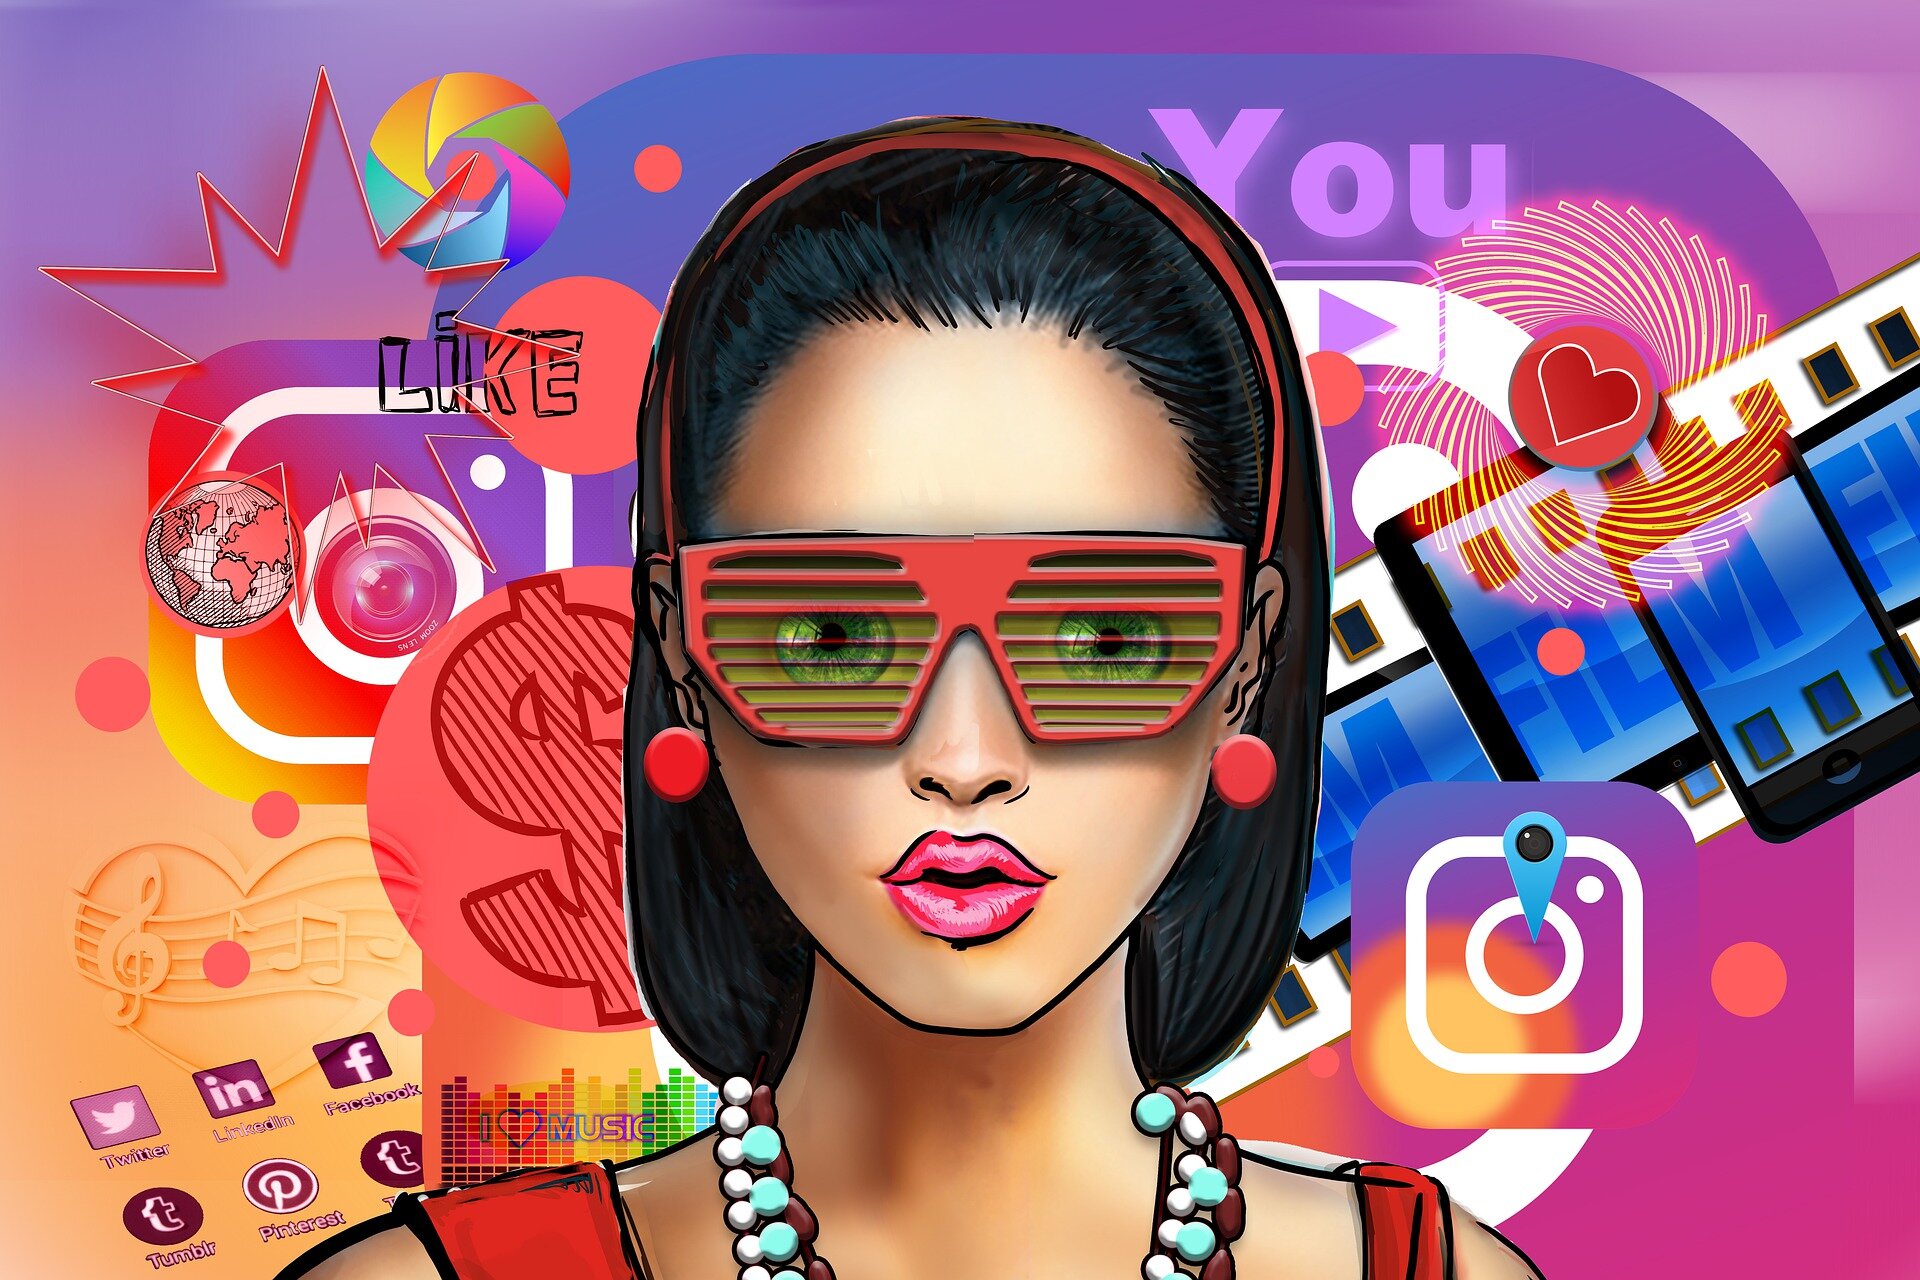 Το Instagram ενθαρρύνει τους νέους να ανακαλύψουν καινούριο περιεχόμενο